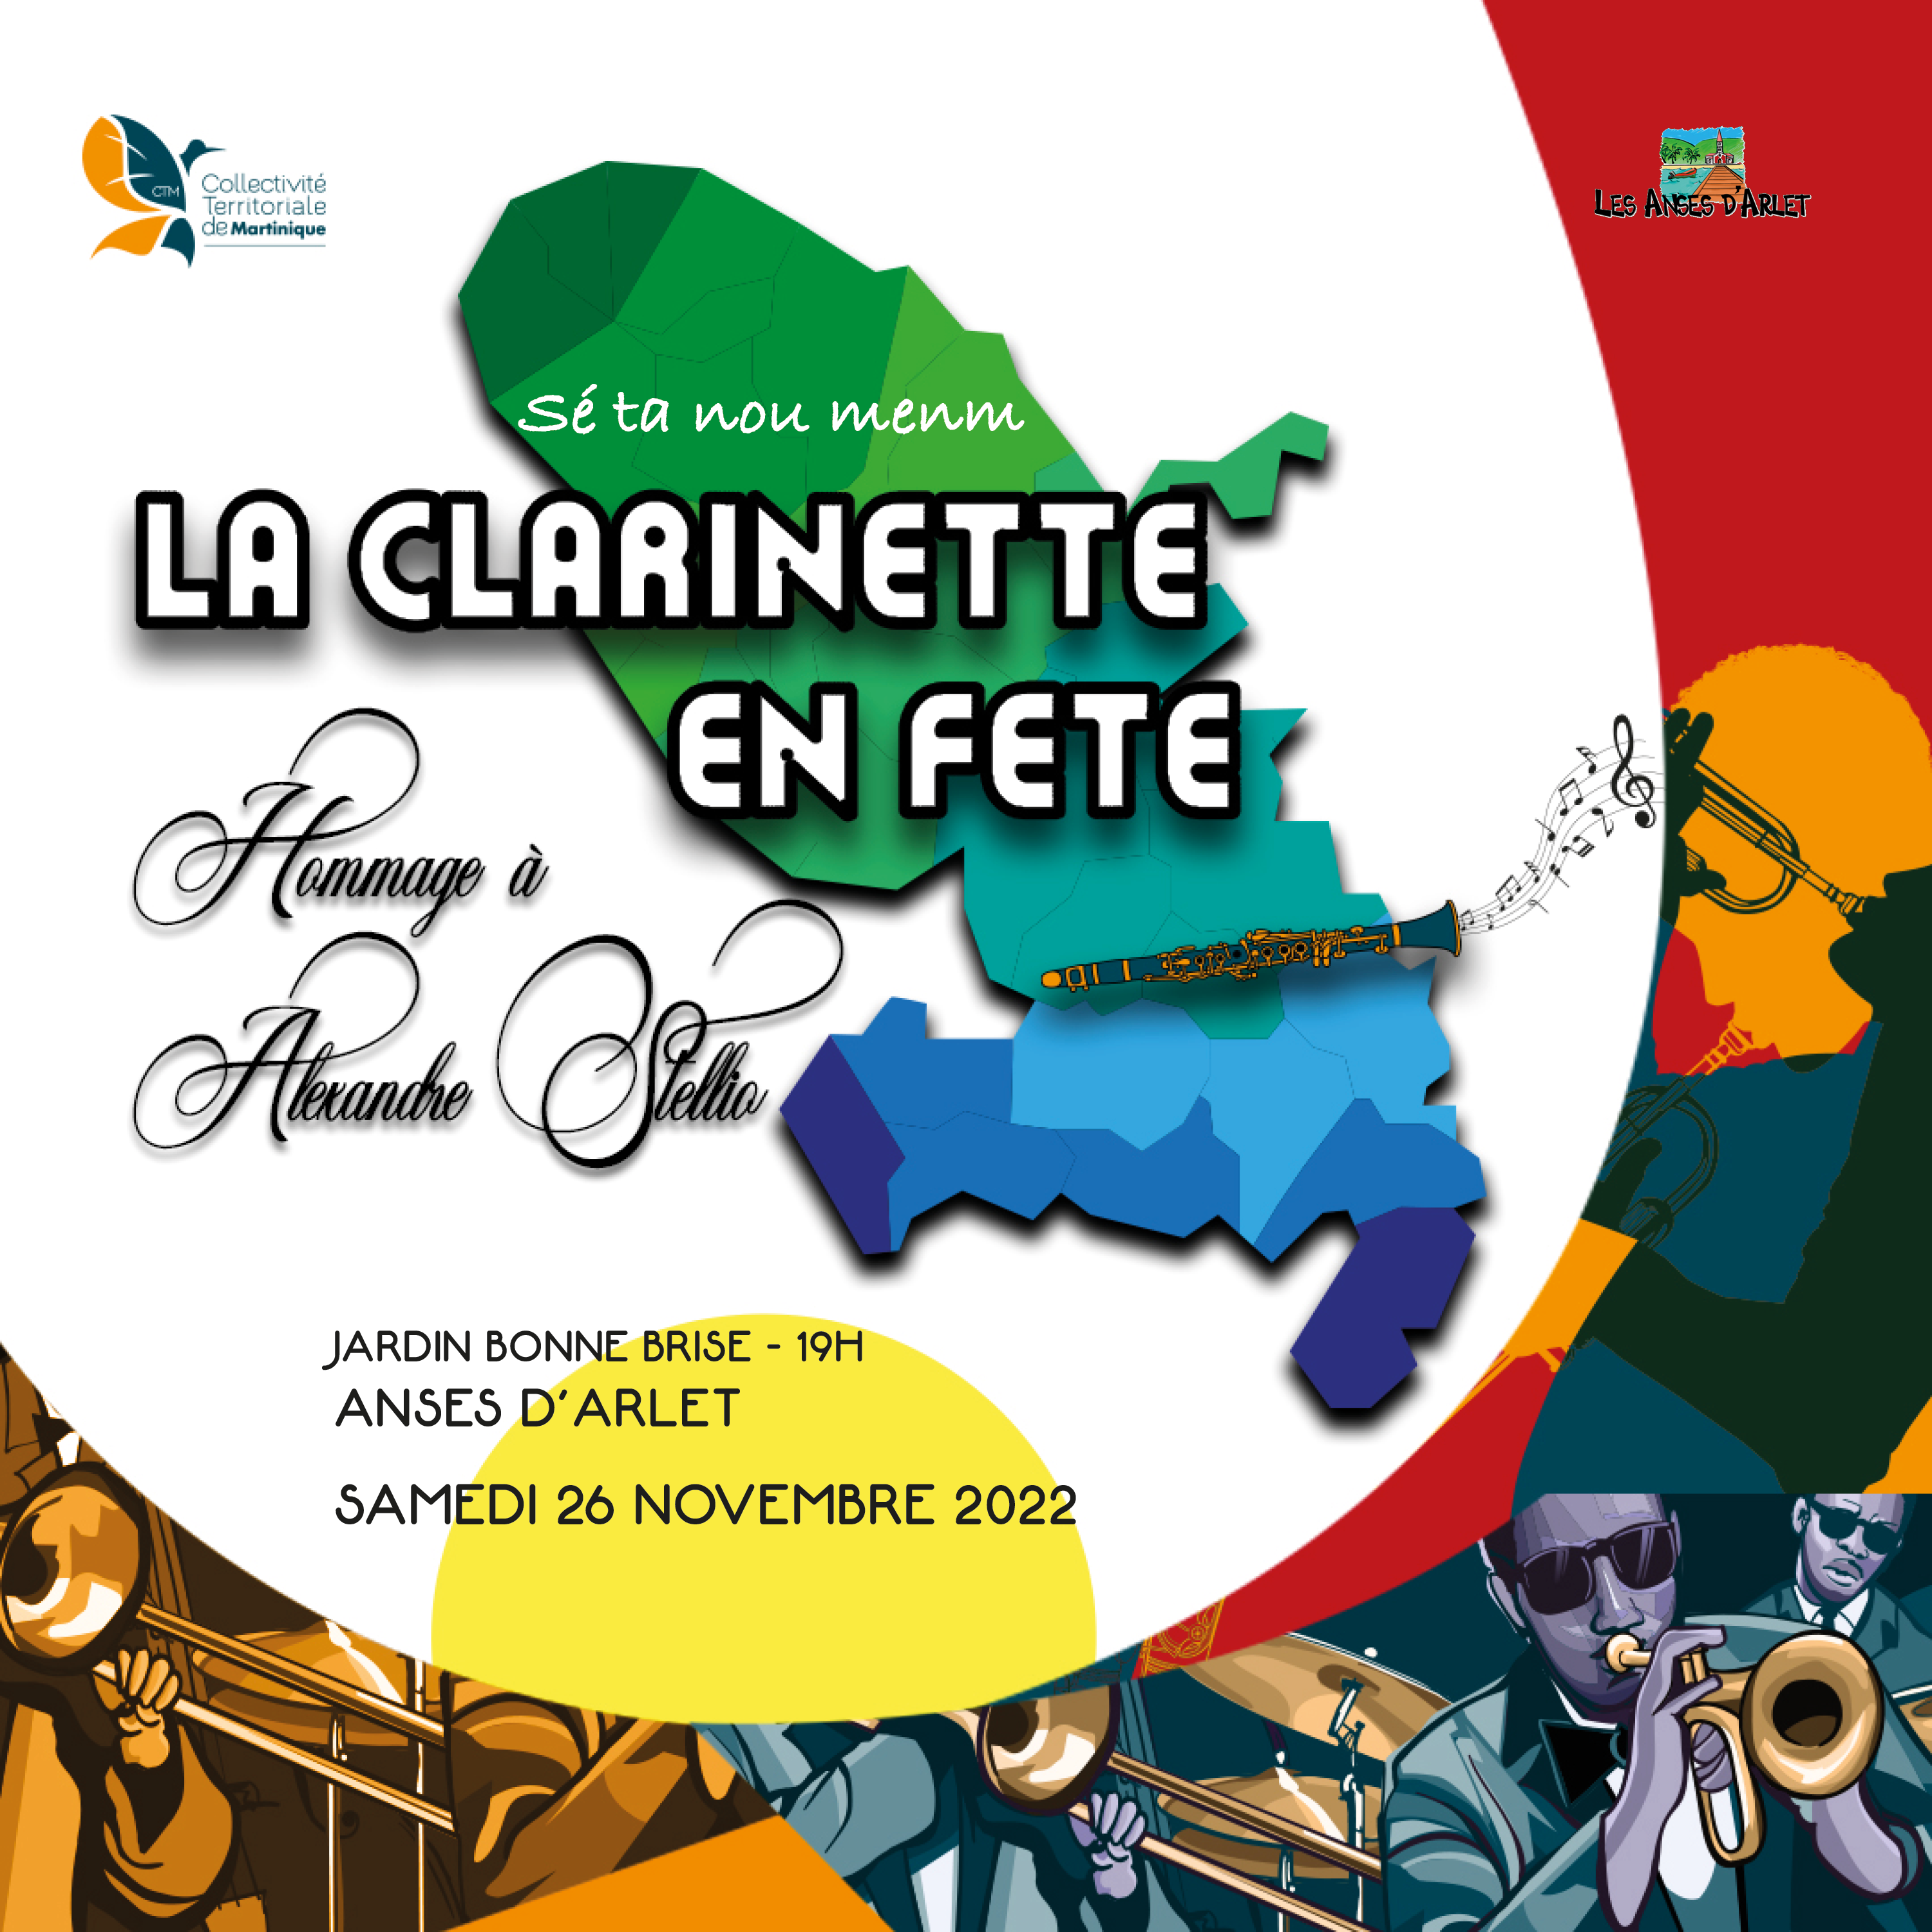 Image de couverture - Invitation concert Gustave Francisque | Clarinette en fête | Ville de Les Anses d'Arlet